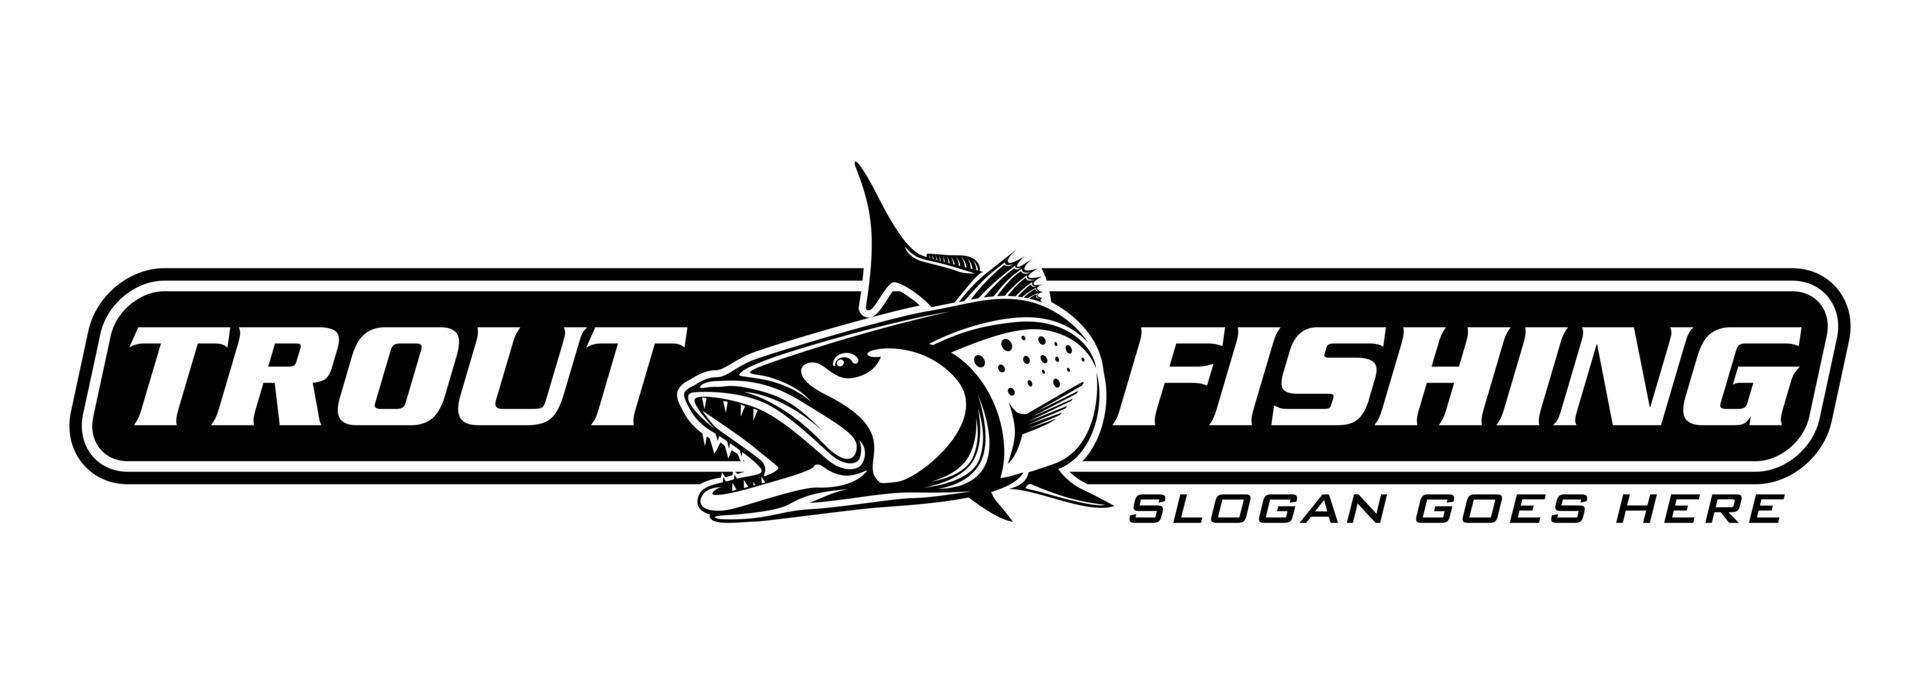 Forellenfischangeln Logo isoliert Hintergrund. modernes rustikales Logo-Design im Vintage-Stil. großartig als Ihr Logo und Ihre Marke für Fischereiunternehmen zu verwenden vektor